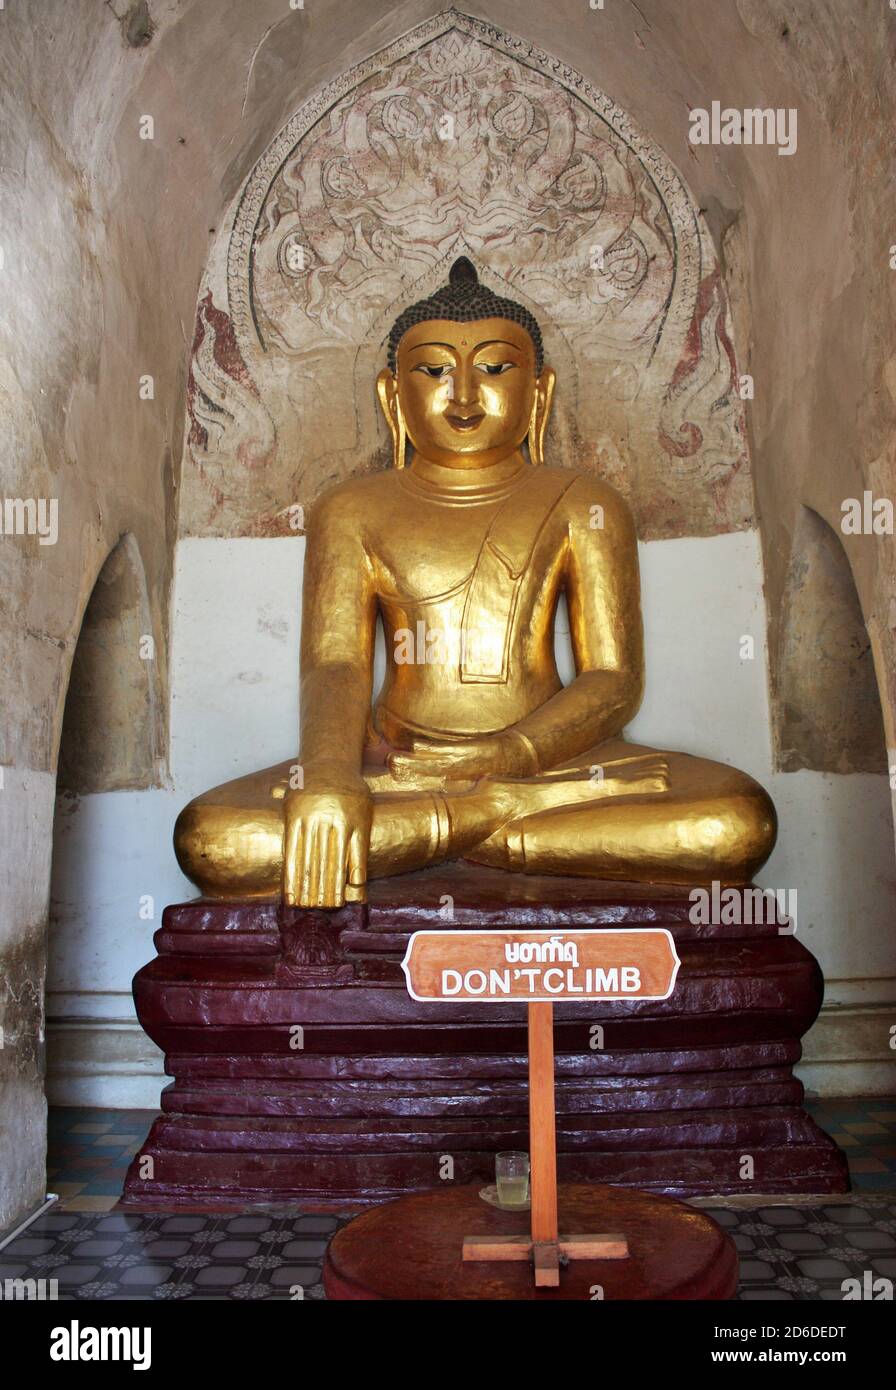 Goldfarbene Buddha-Statue mit Schilder Besteigen Sie nicht am Ananda Tempel in Bagan, Myanmar Stockfoto